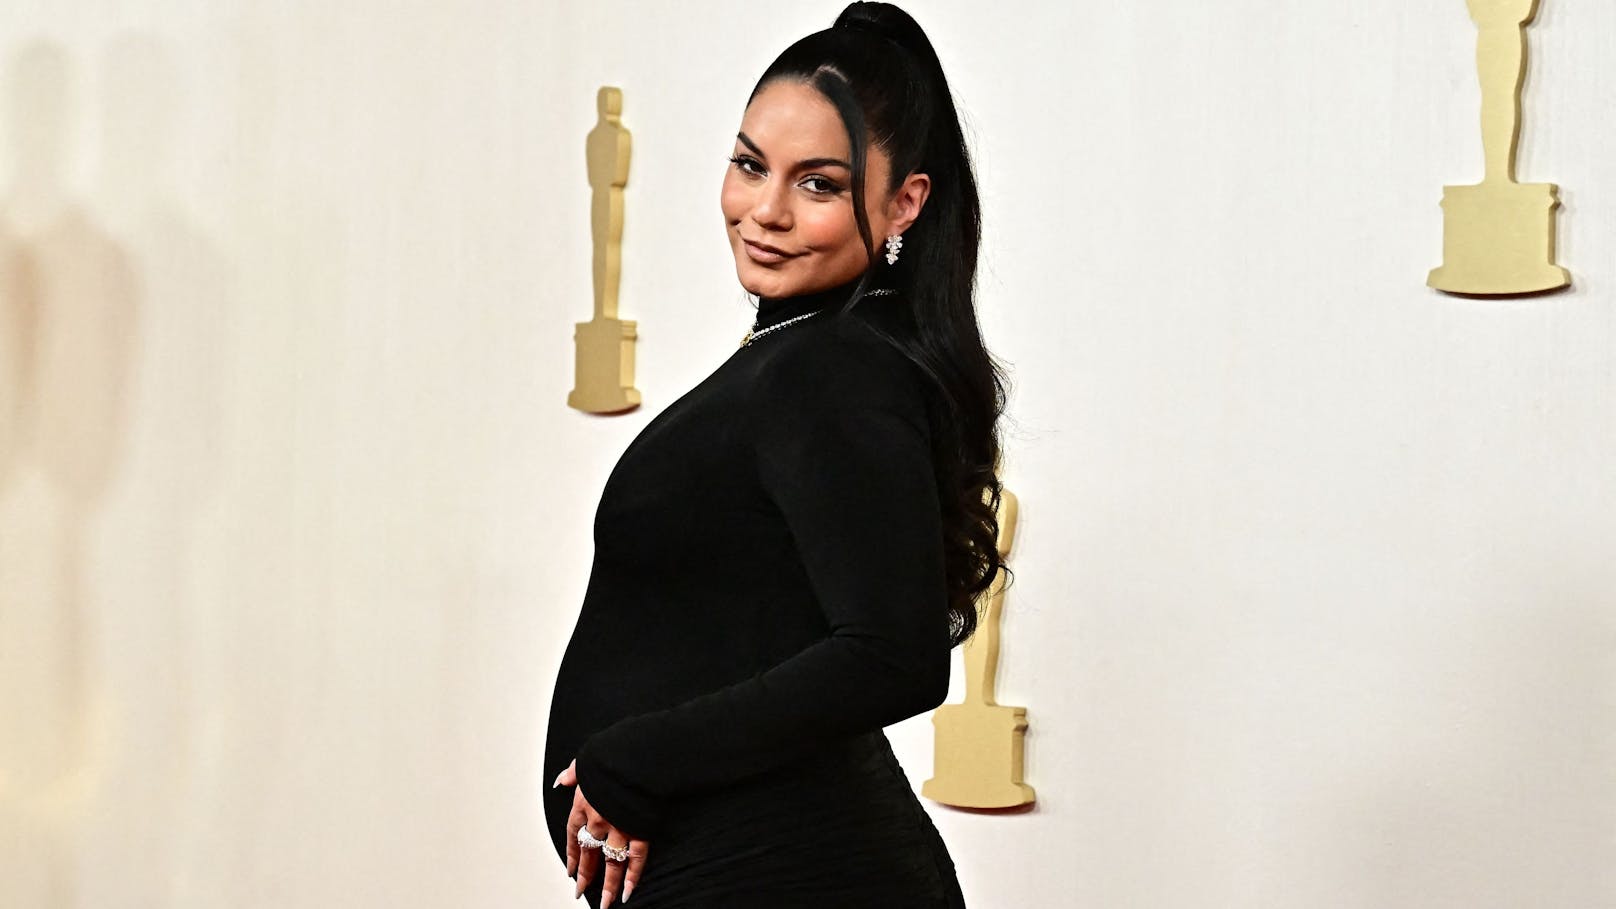 Schauspielerin Vanessa Hudgens sorgte für die wohl größte Überraschung des Oscar-Abends: Sie präsentierte stolz ihren Babybauch.